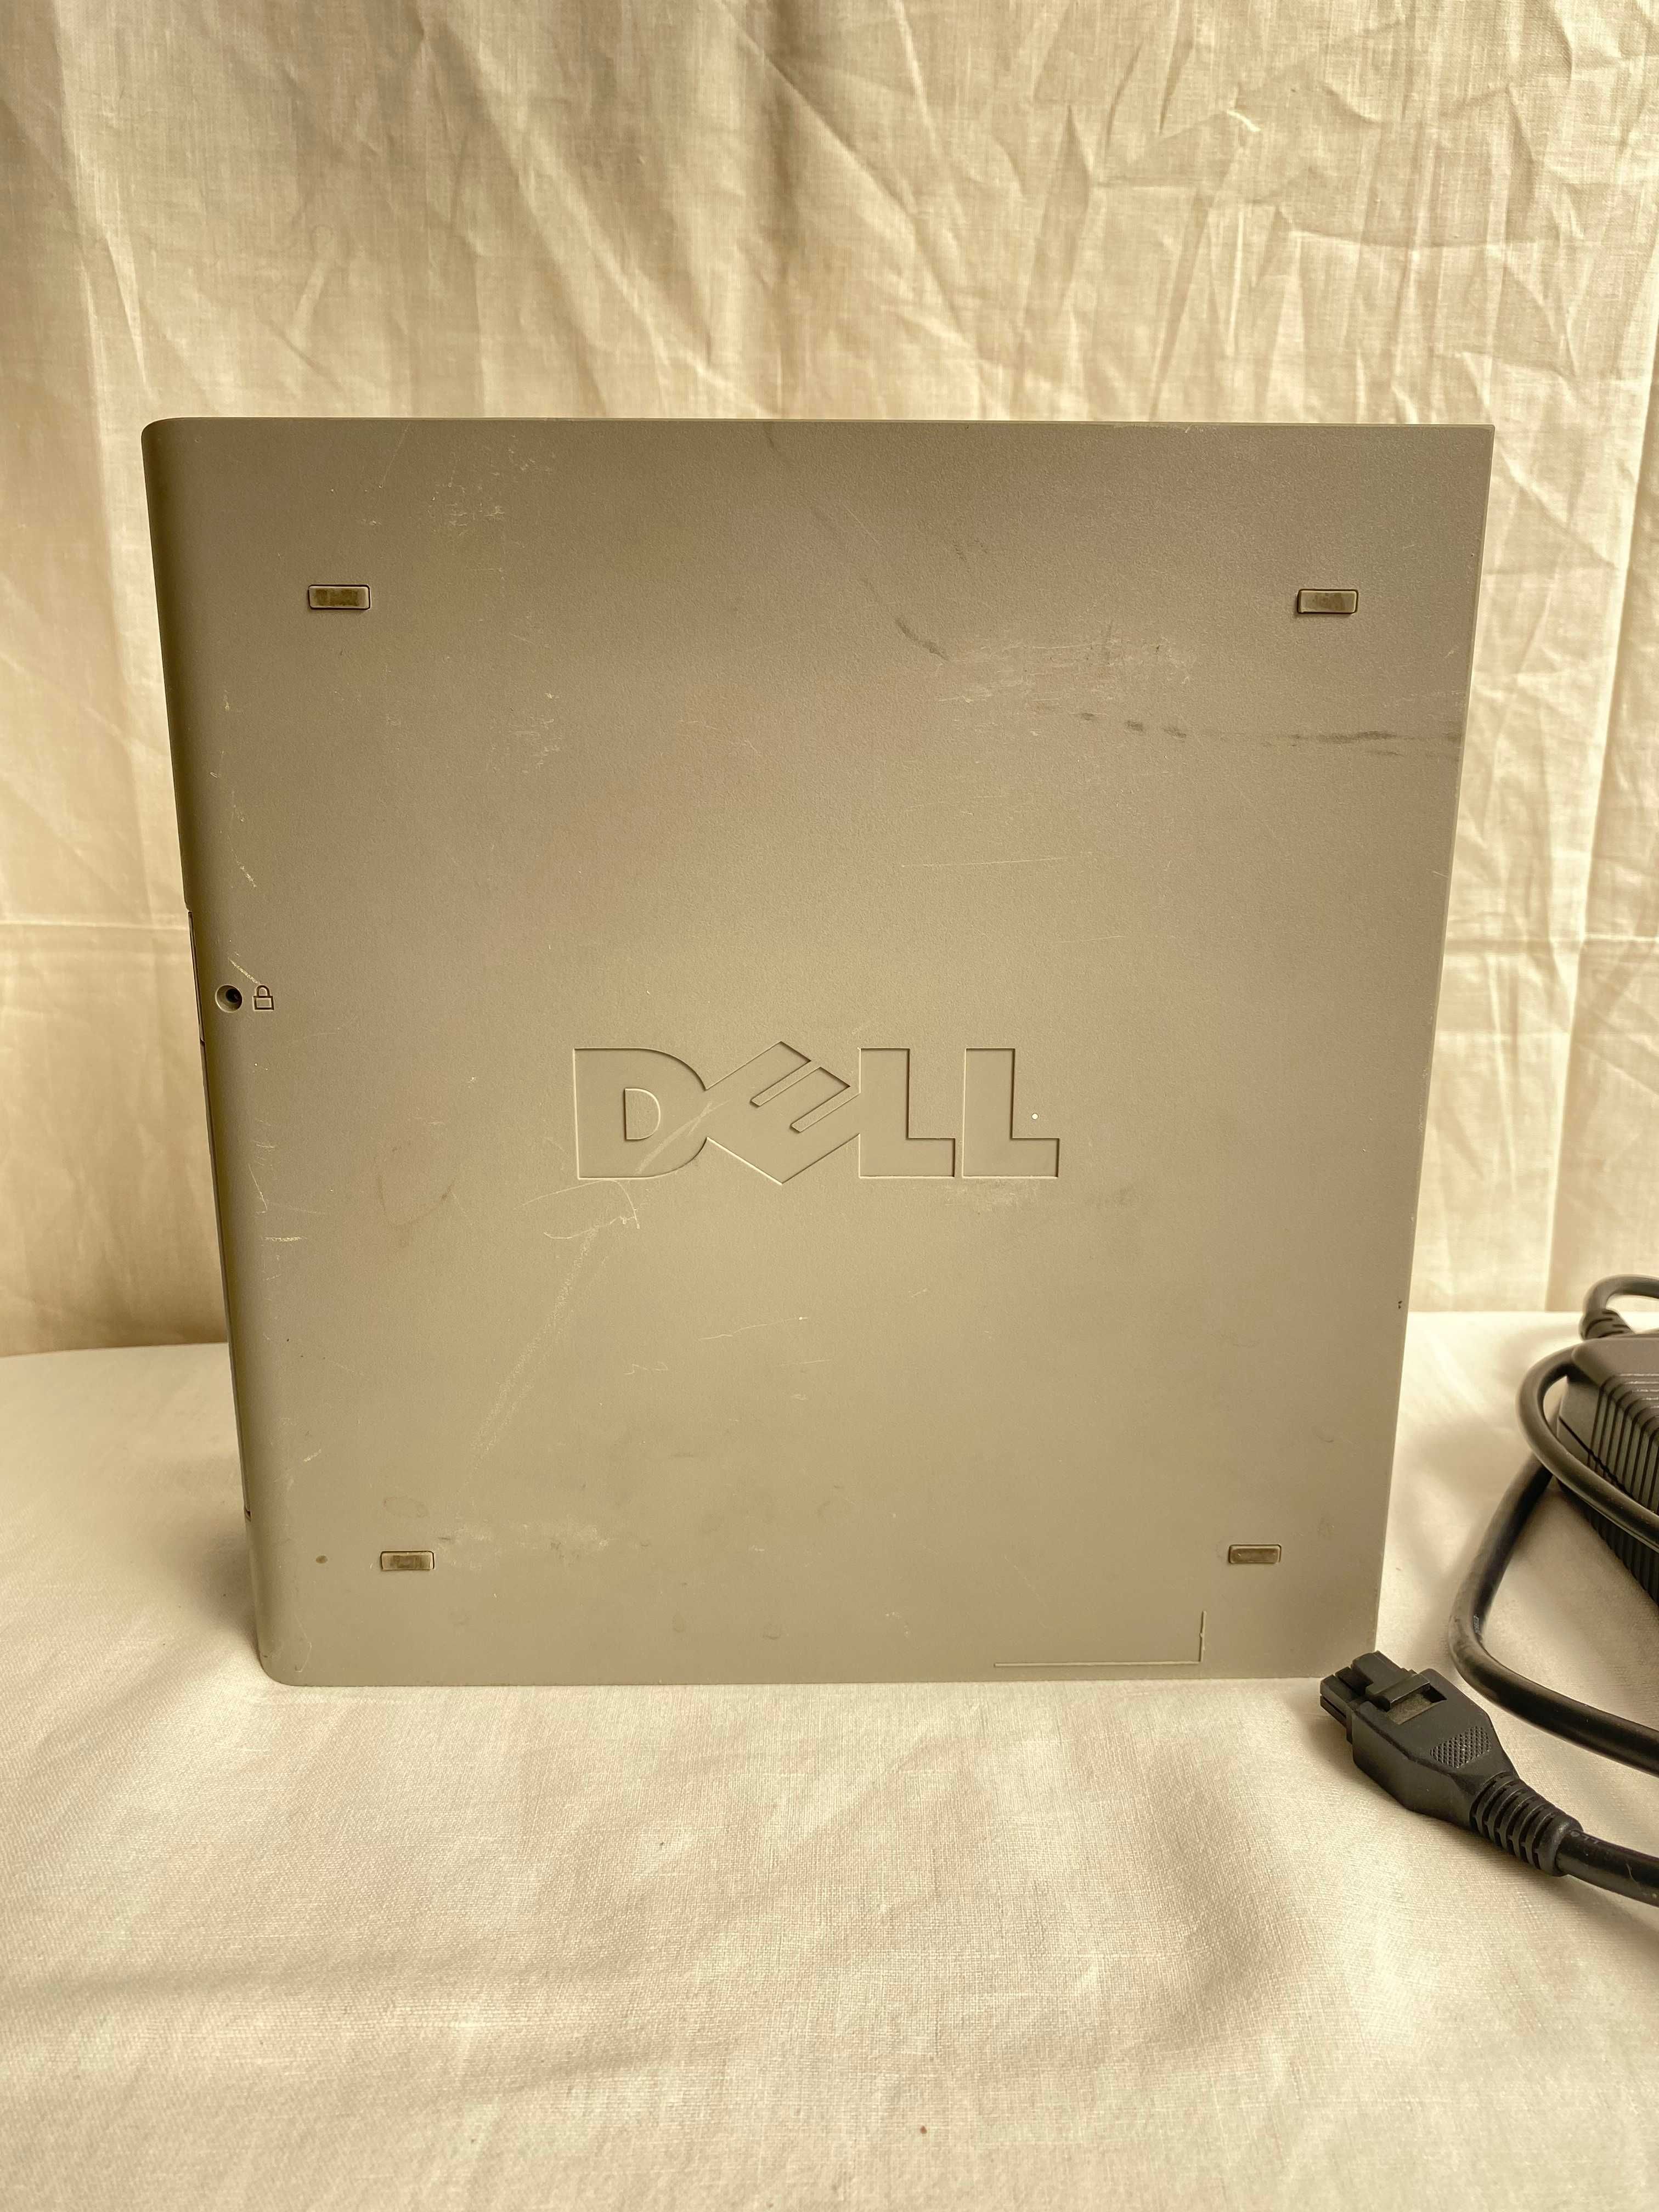 Dell Otiplex gx620